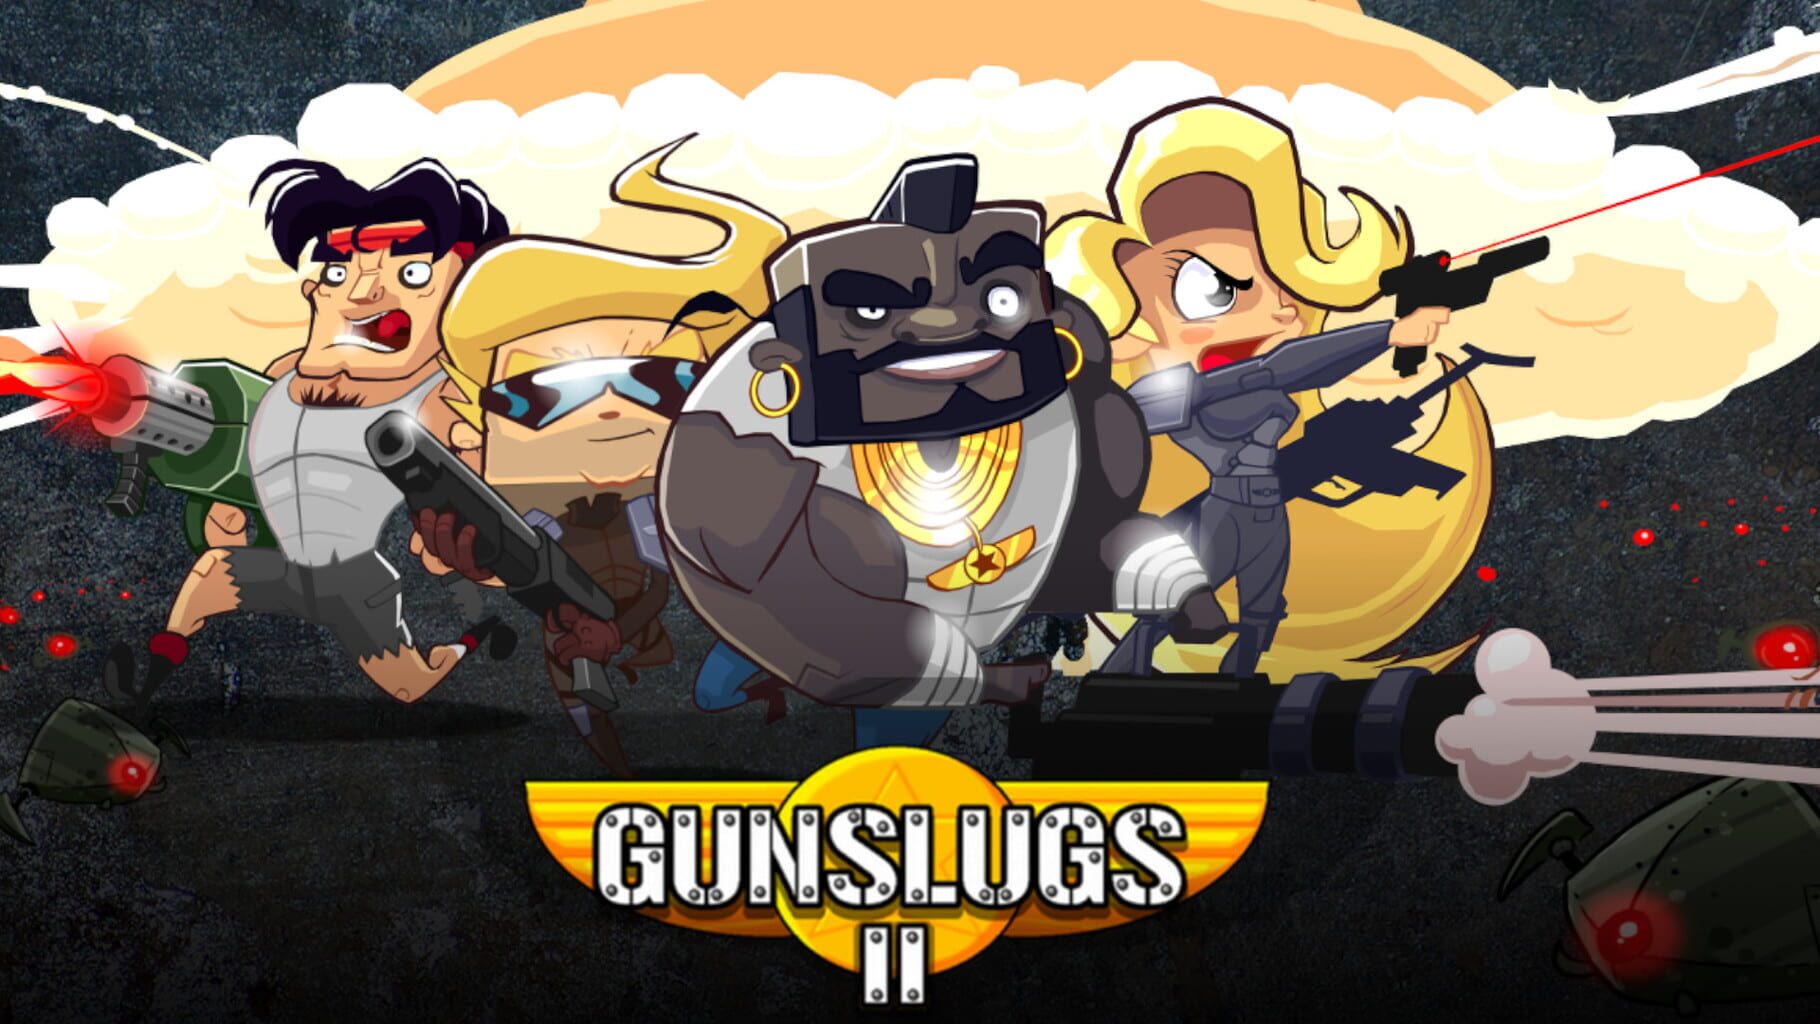 Gunslugs 2 artwork